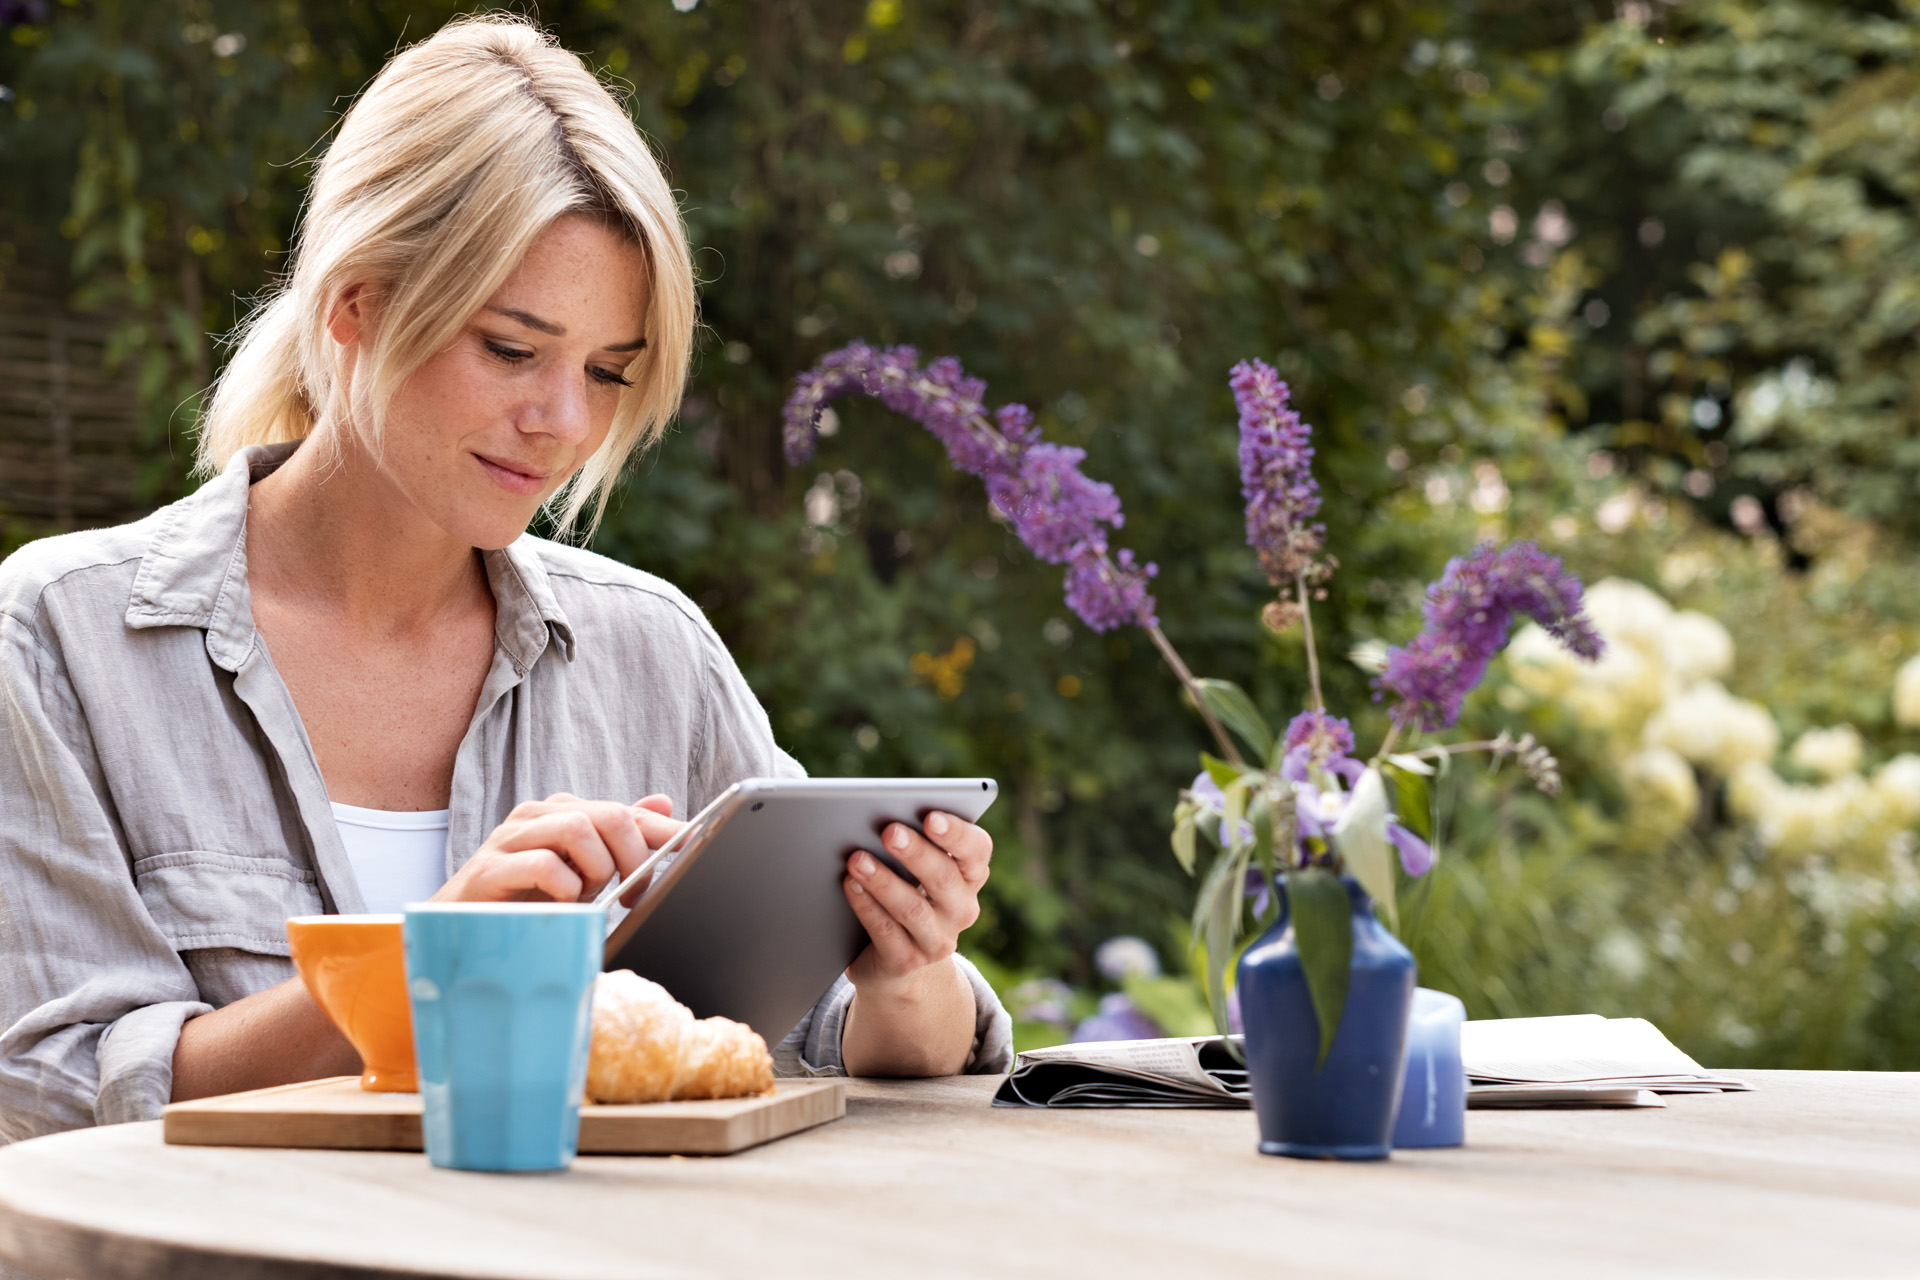 Μια γυναίκα χρησιμοποιεί ένα tablet στο τραπέζι πρωινού στον κήπο